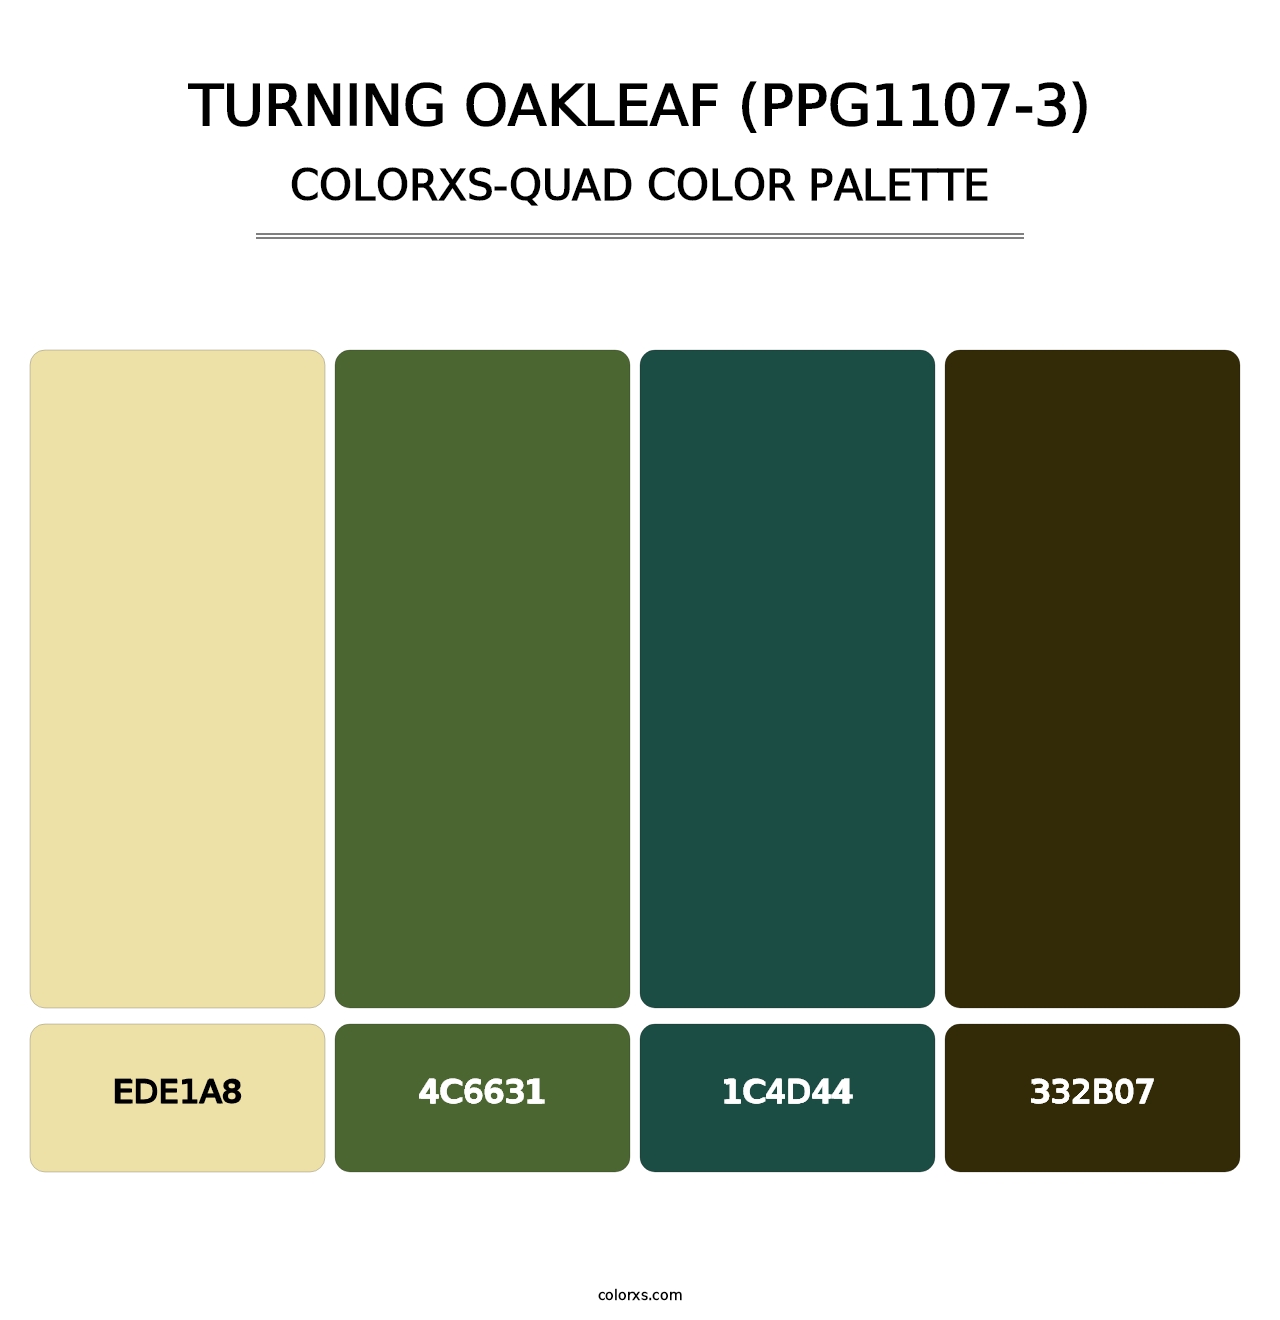 Turning Oakleaf (PPG1107-3) - Colorxs Quad Palette